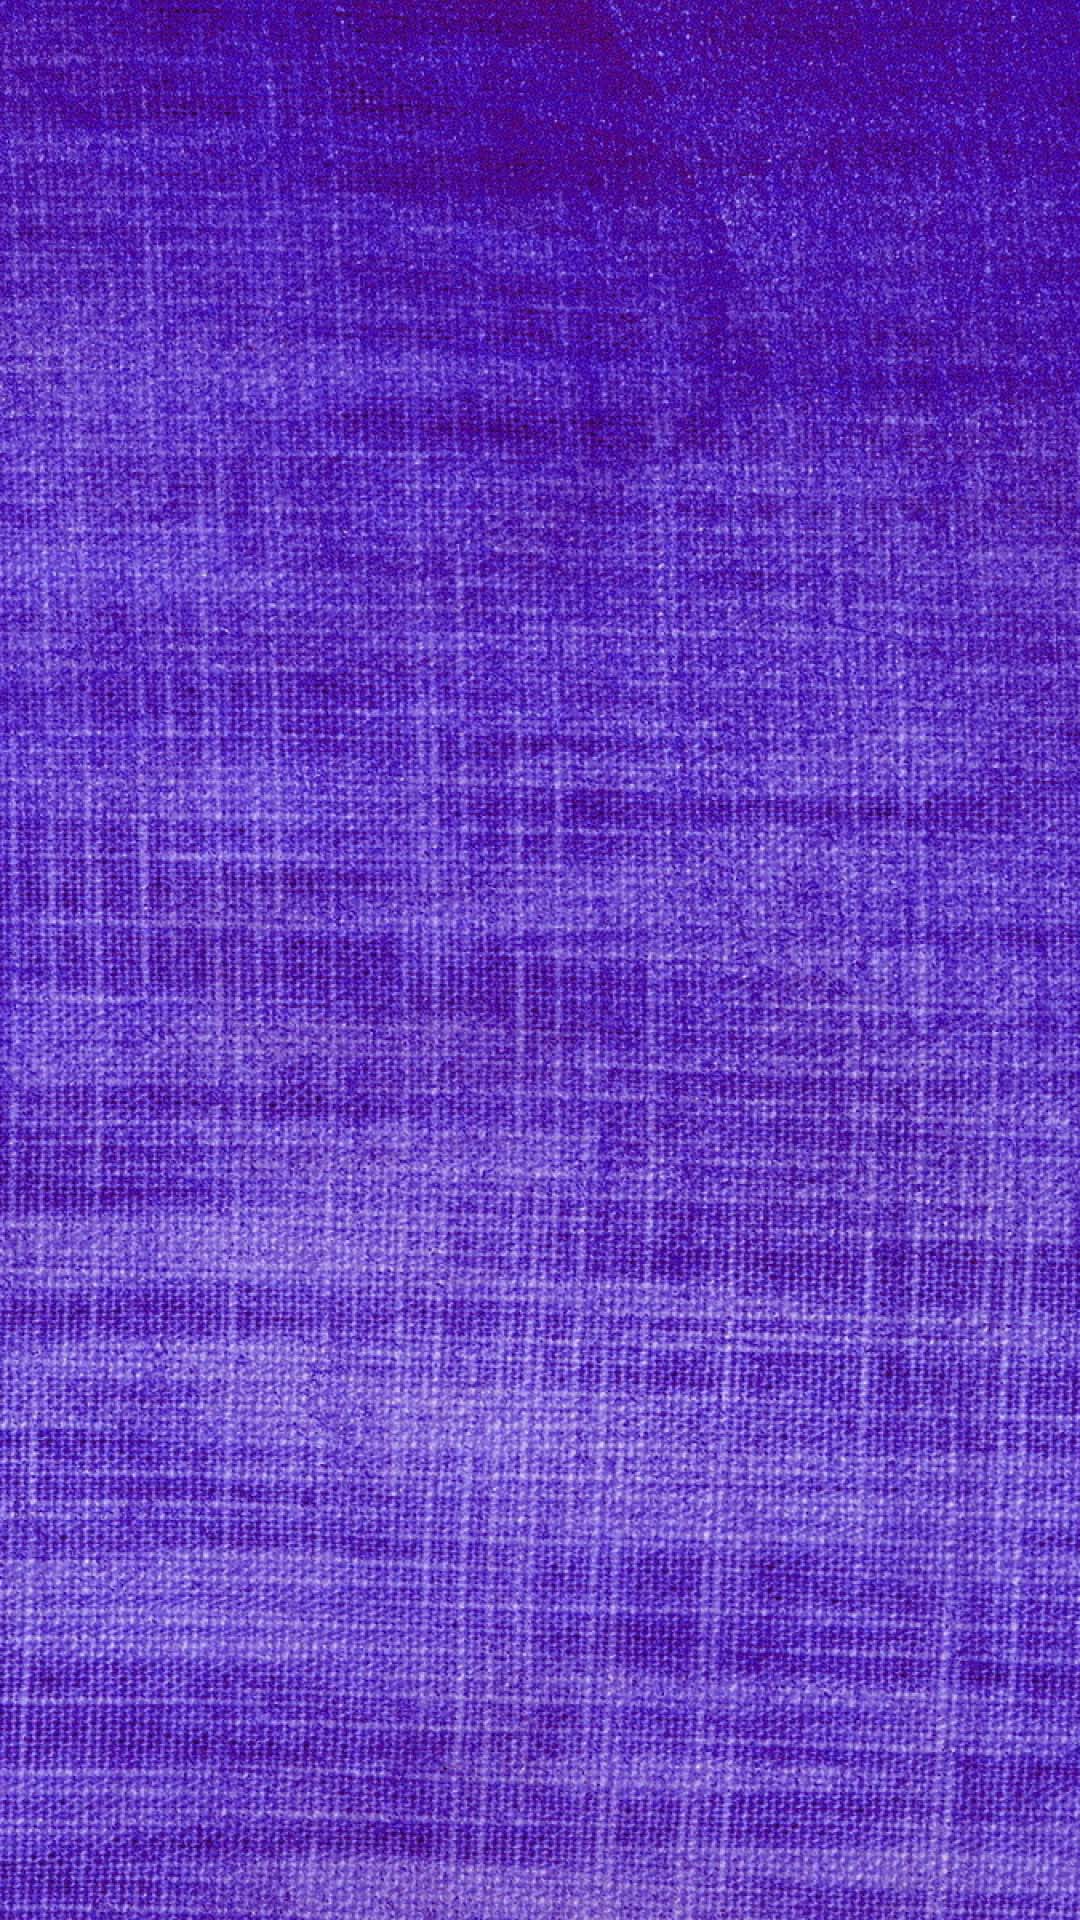 75+ Purple Phone Wallpaper on WallpaperSafari